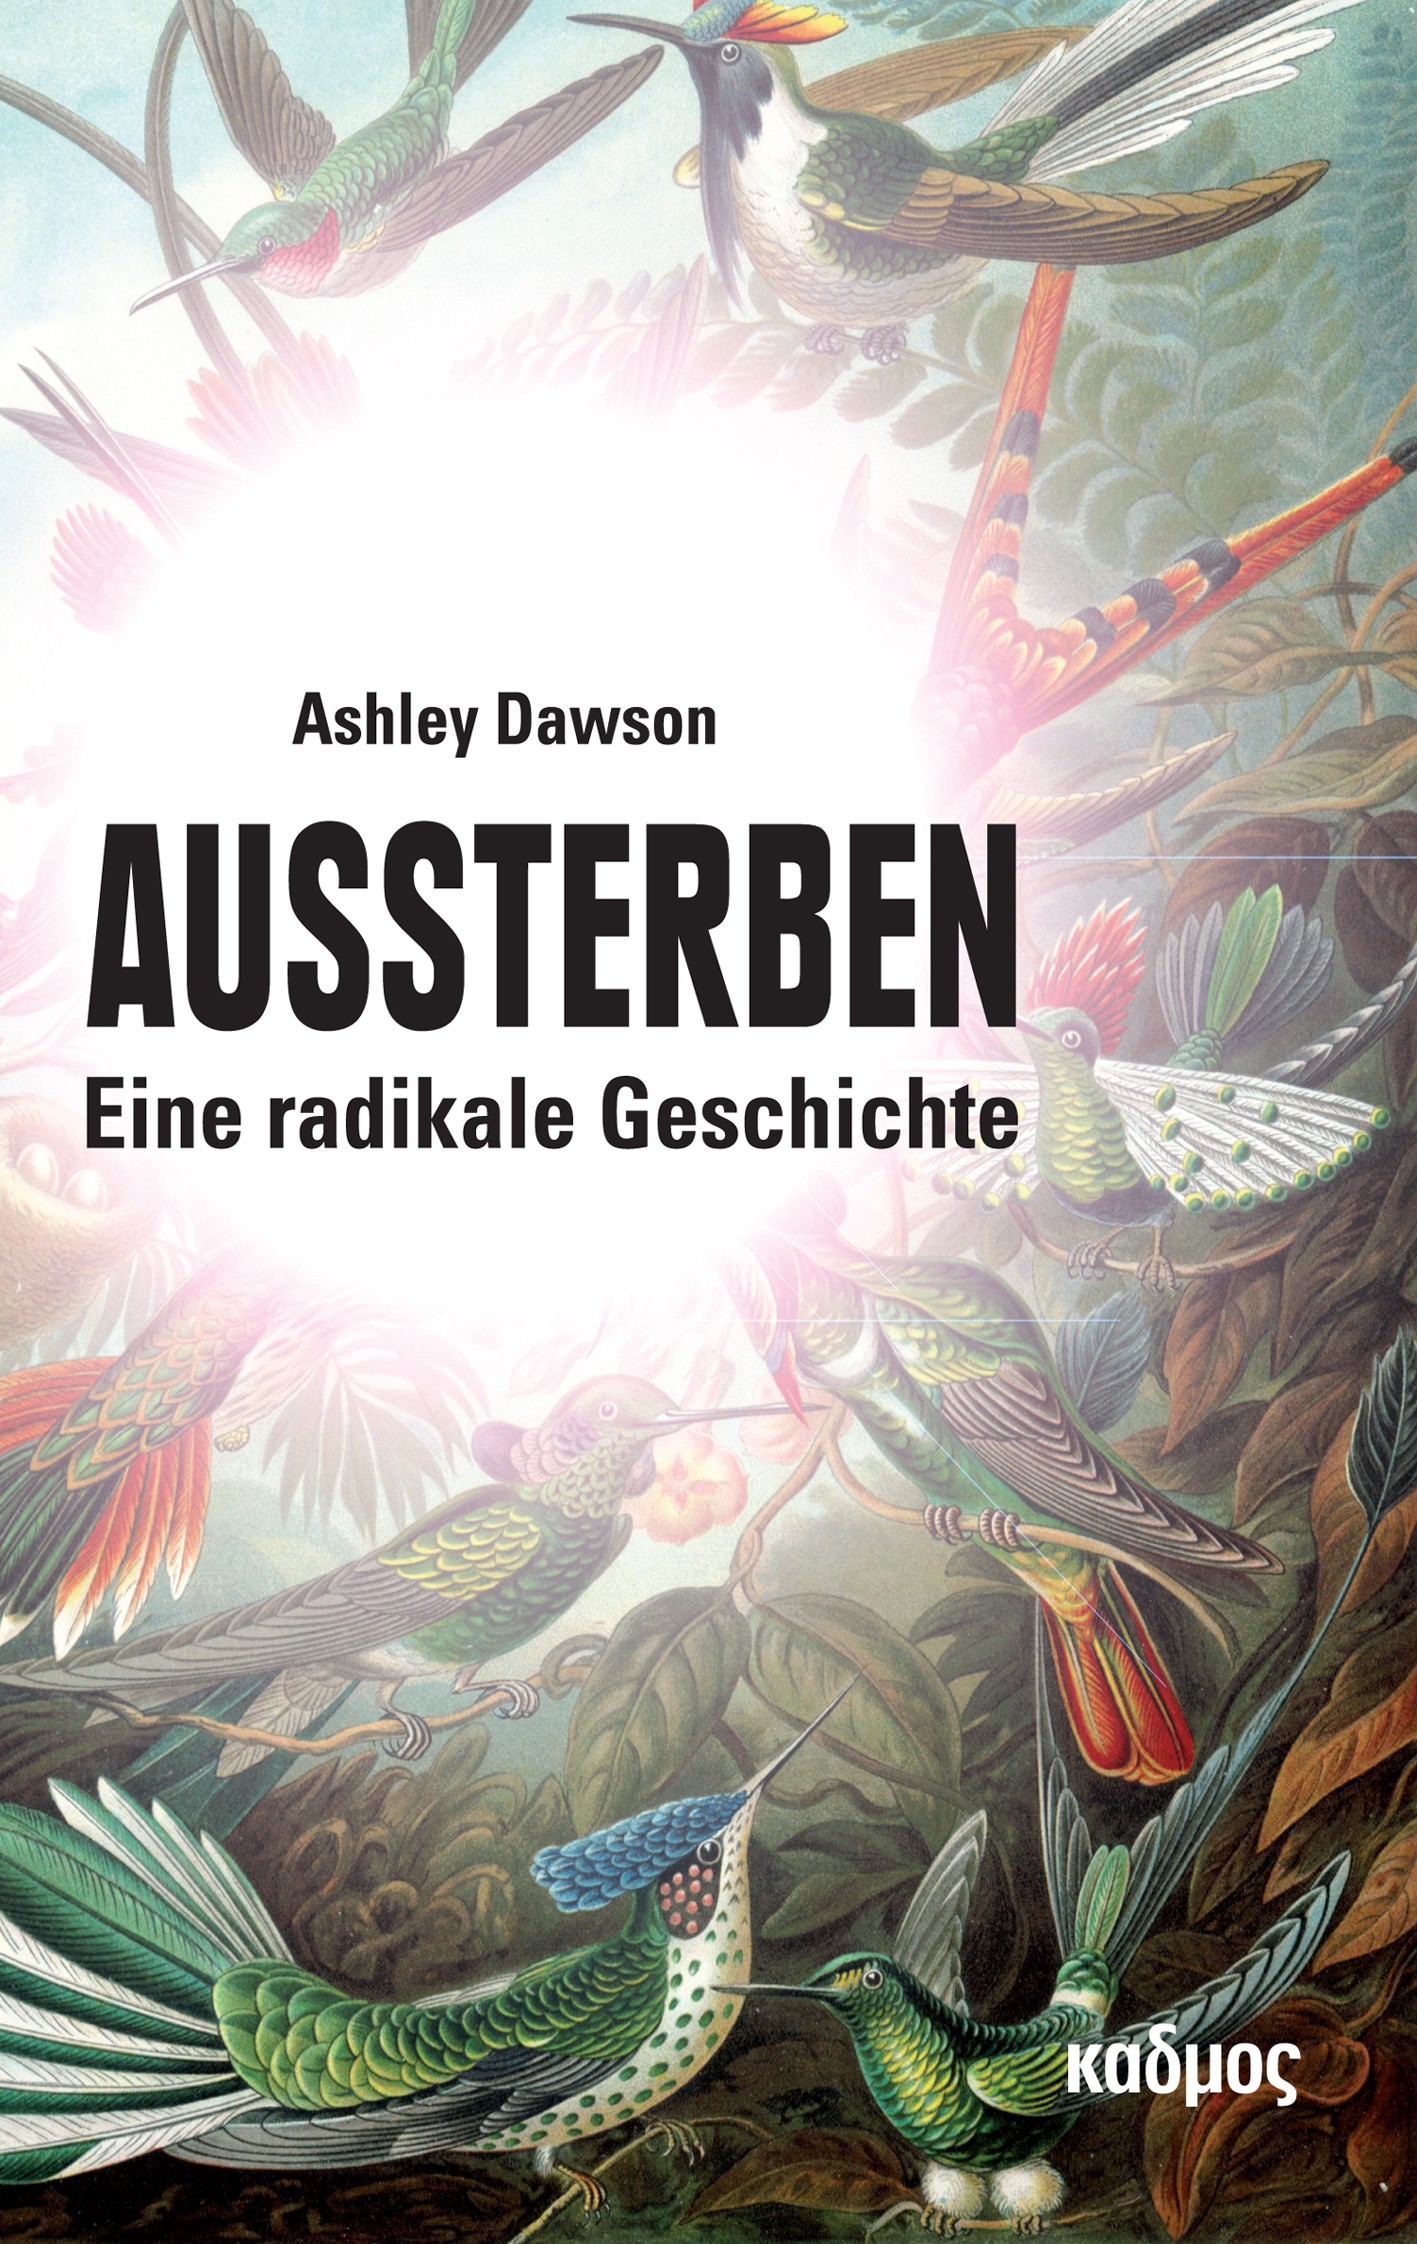 Buchbesprechung: Ashley Dawson, Aussterben – Eine radikale Geschichte